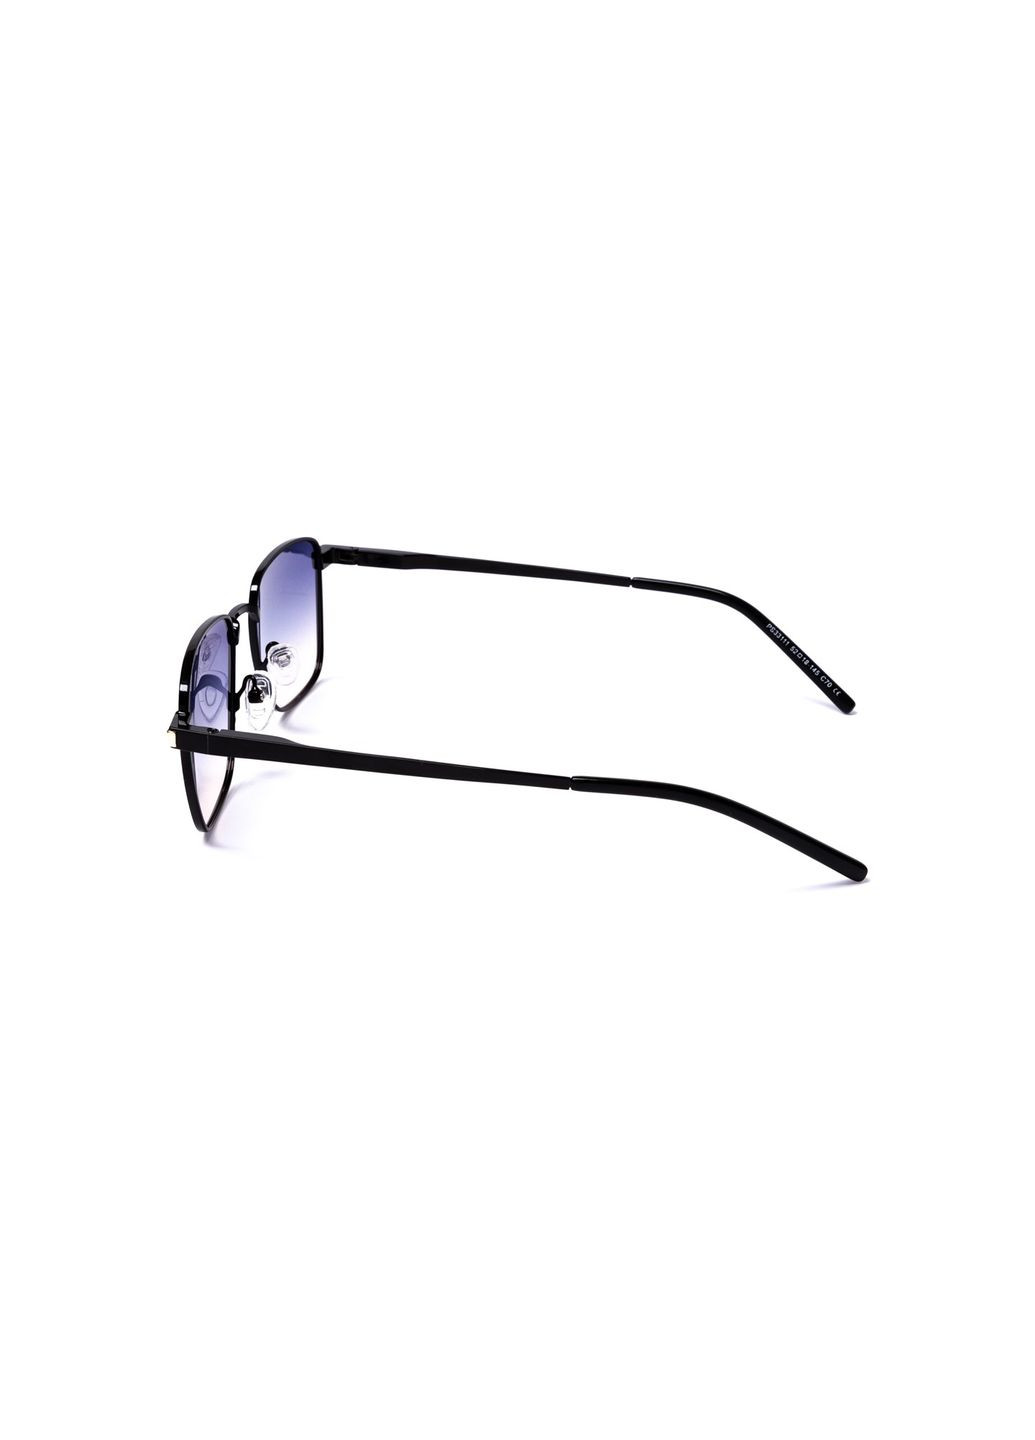 Солнцезащитные очки с поляризацией Классика женские LuckyLOOK 382-855 (289360220)